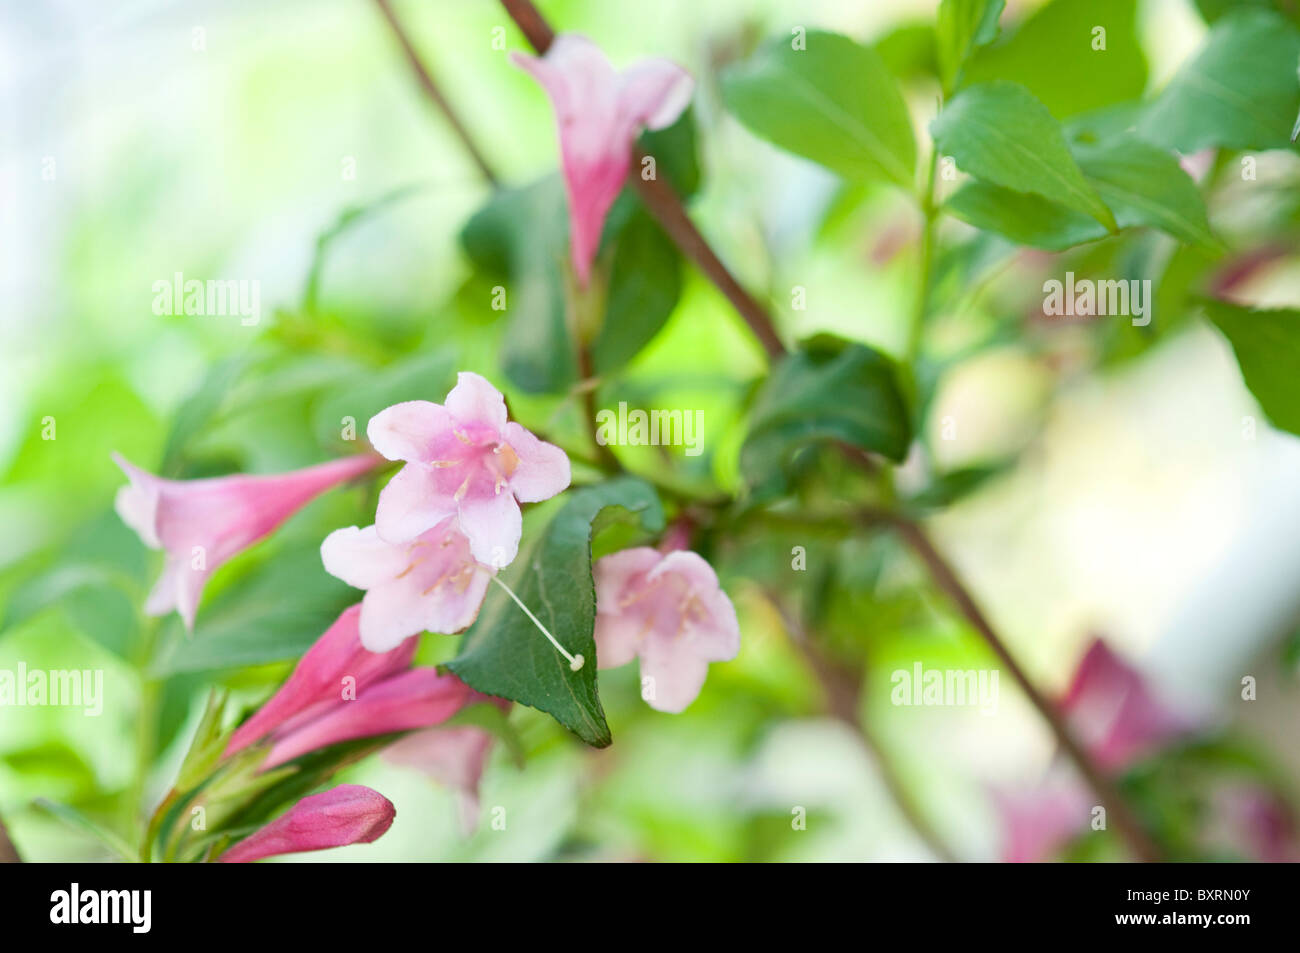 Flower of Weigela Nana Purpurea (Krzewuszka) Stock Photo